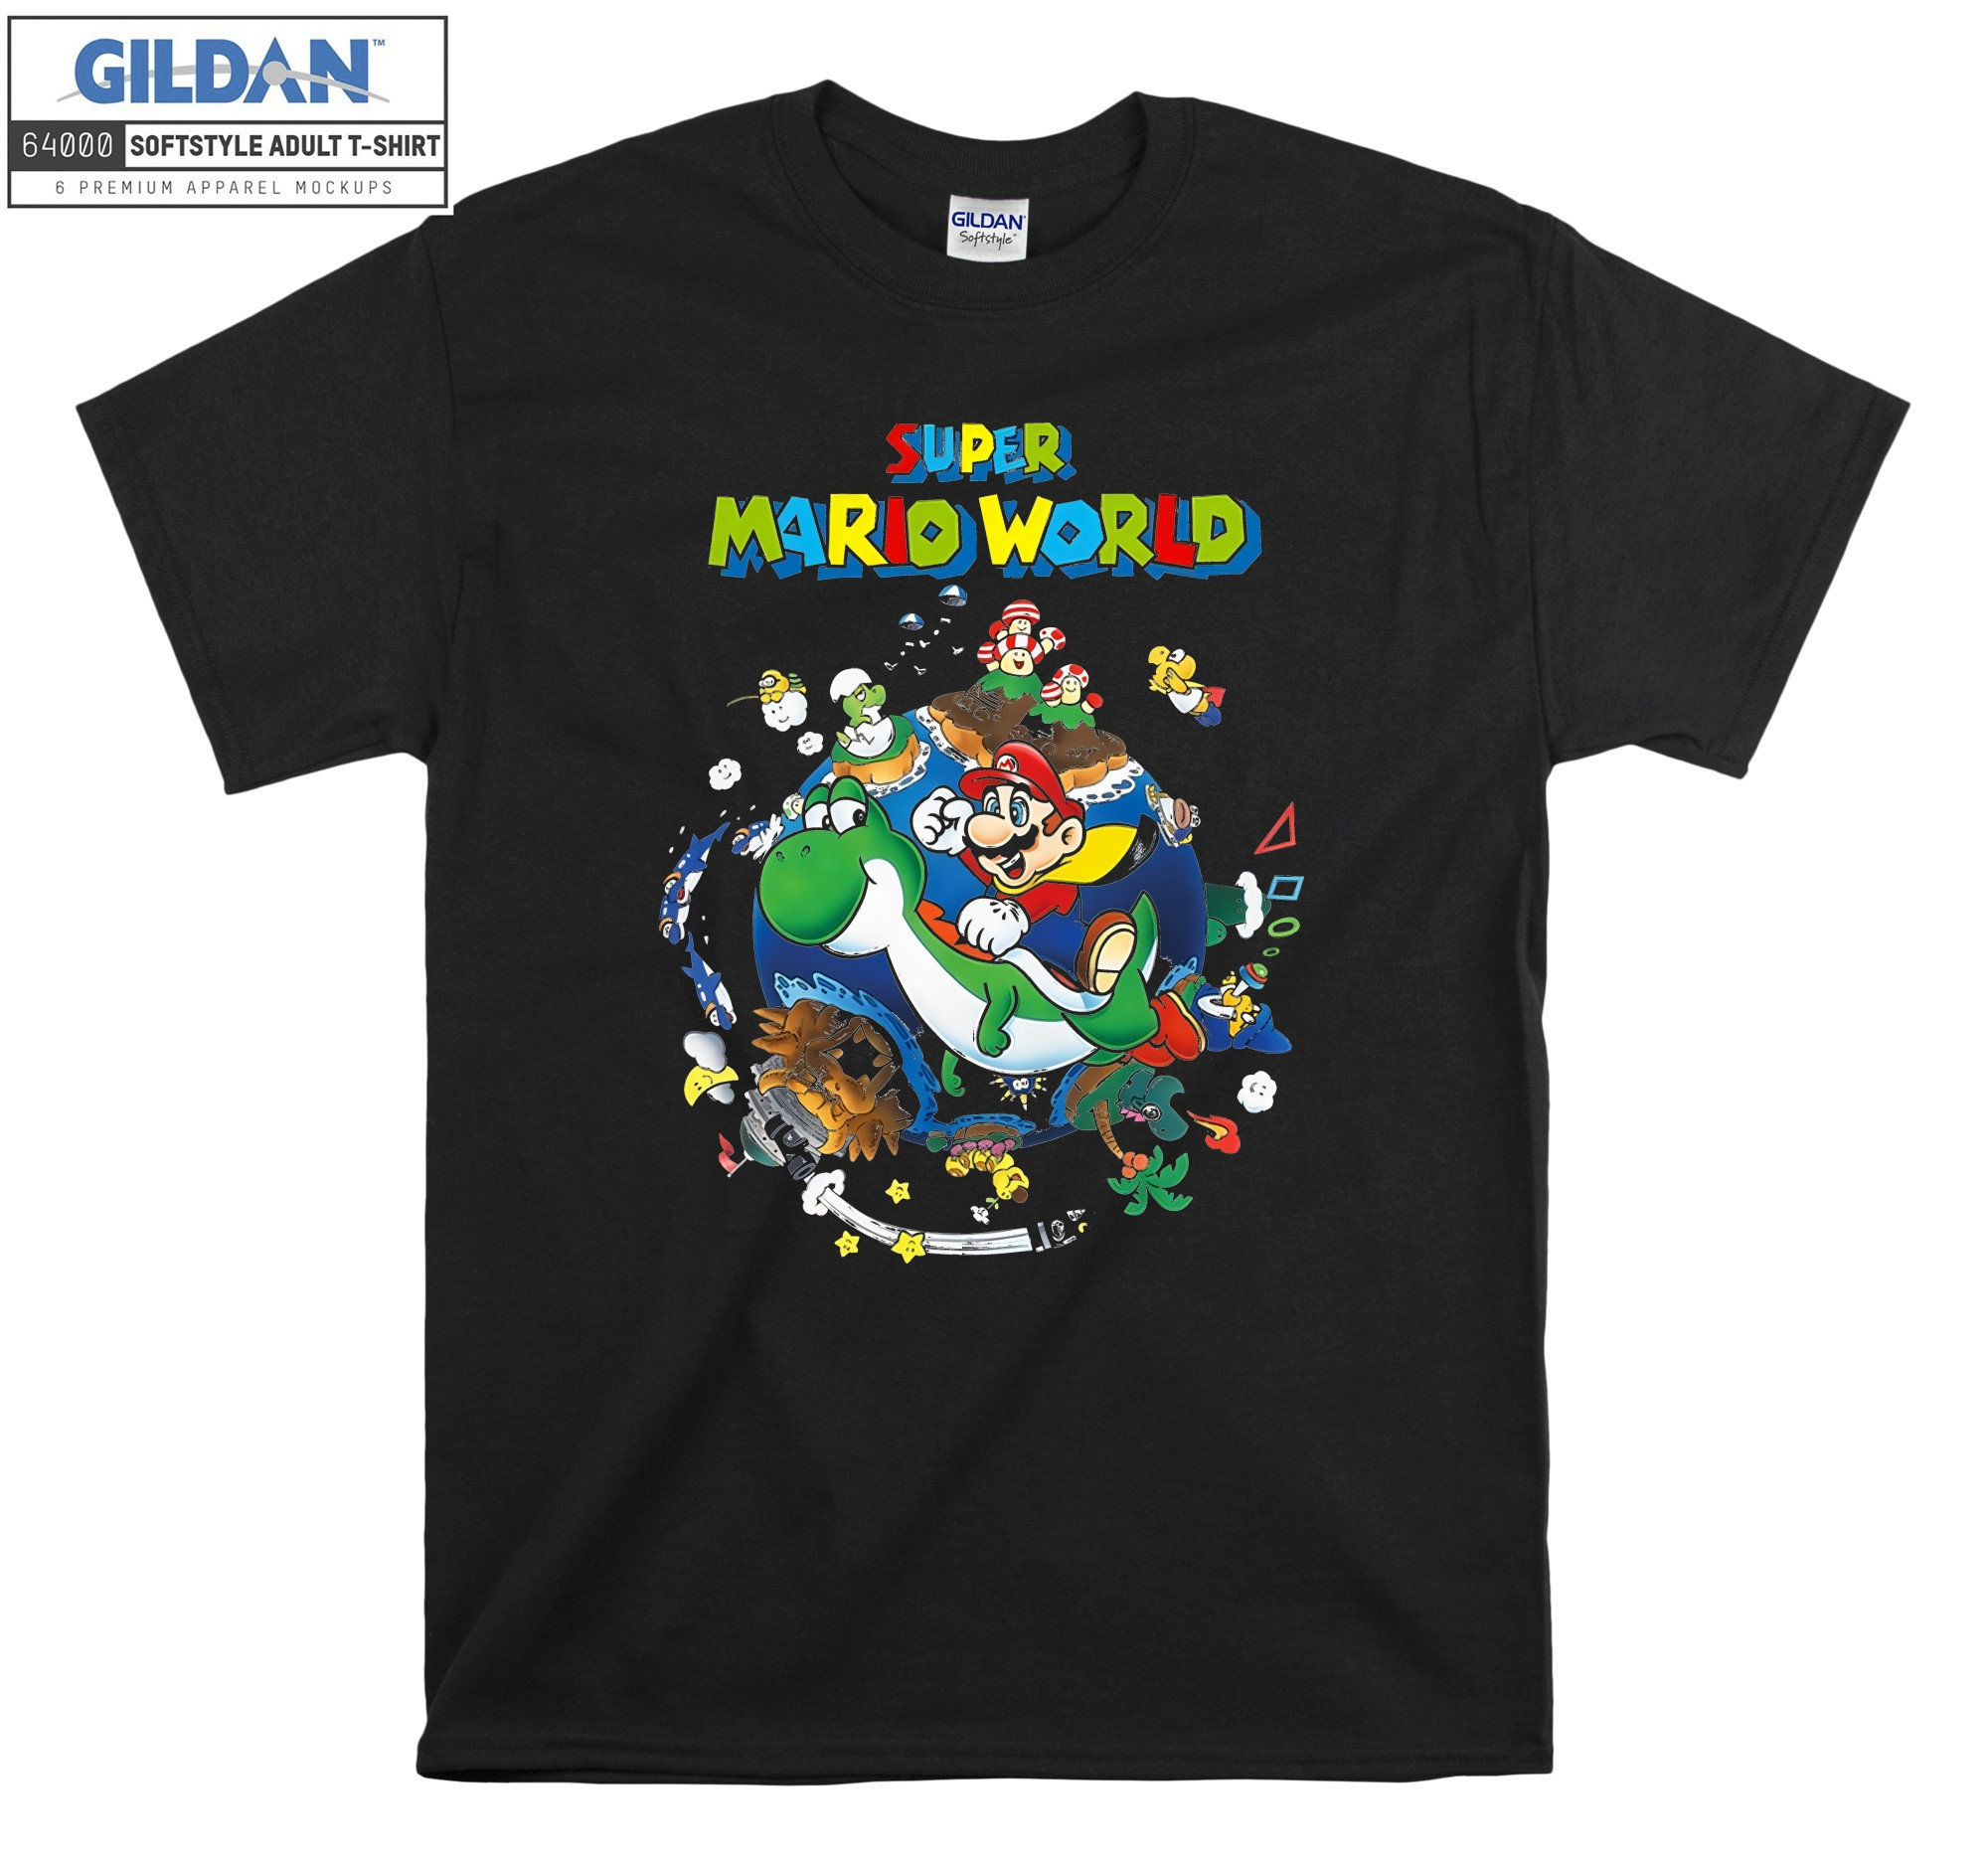 Super Mario World Yoshi & Mario T-shirt